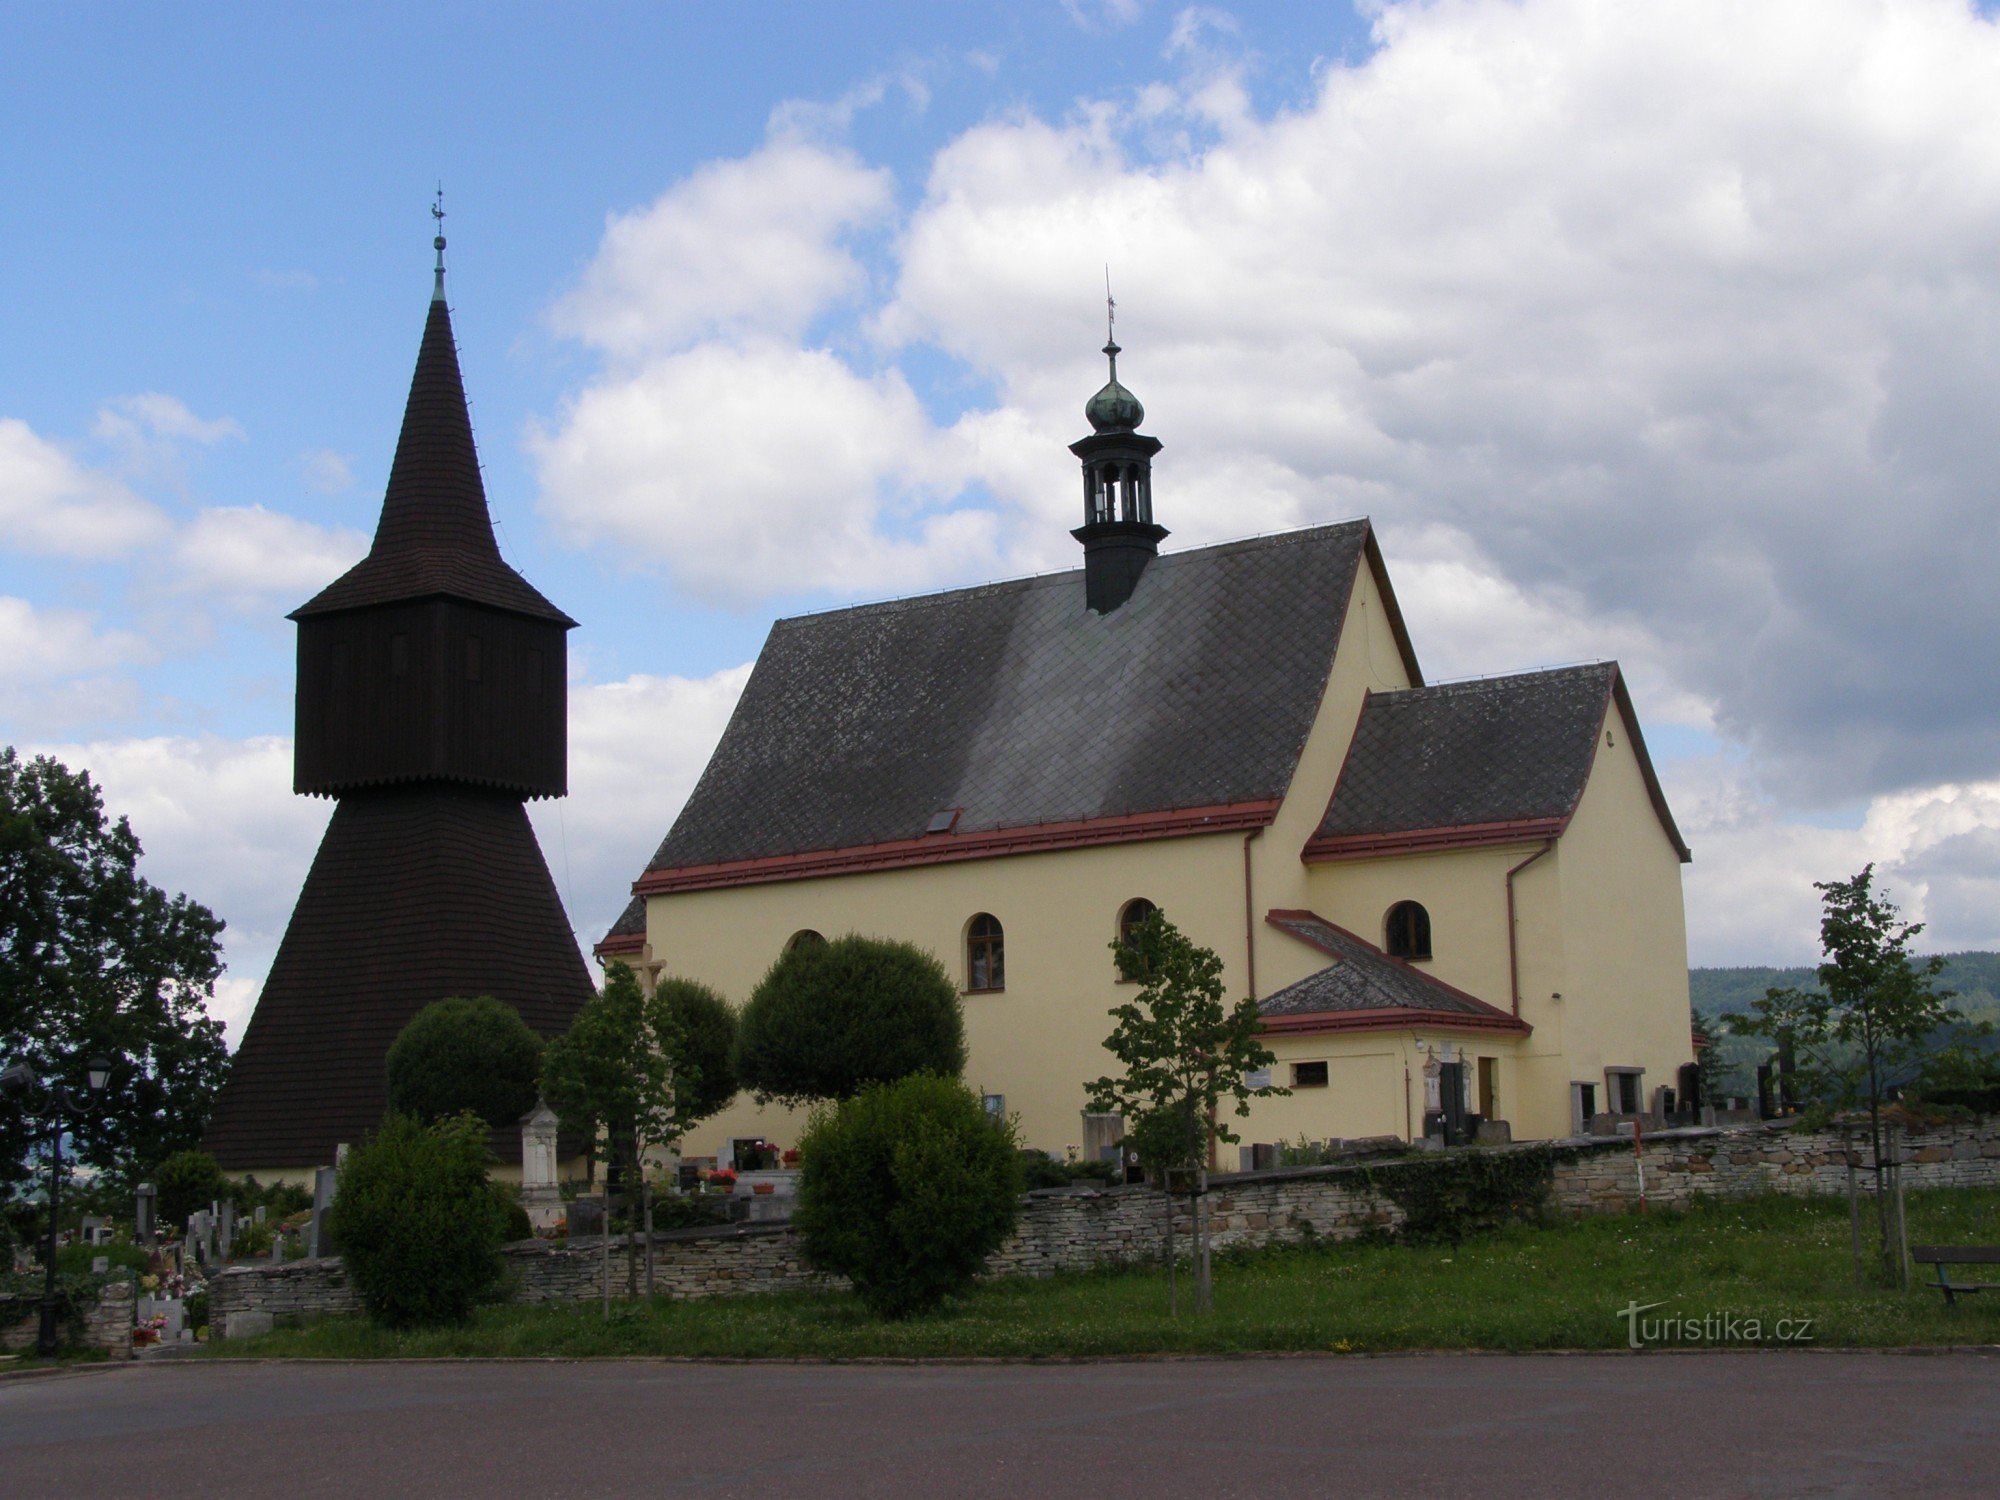 Rtyne in Podkrkonoší - church of St. John the Baptist with the belfry